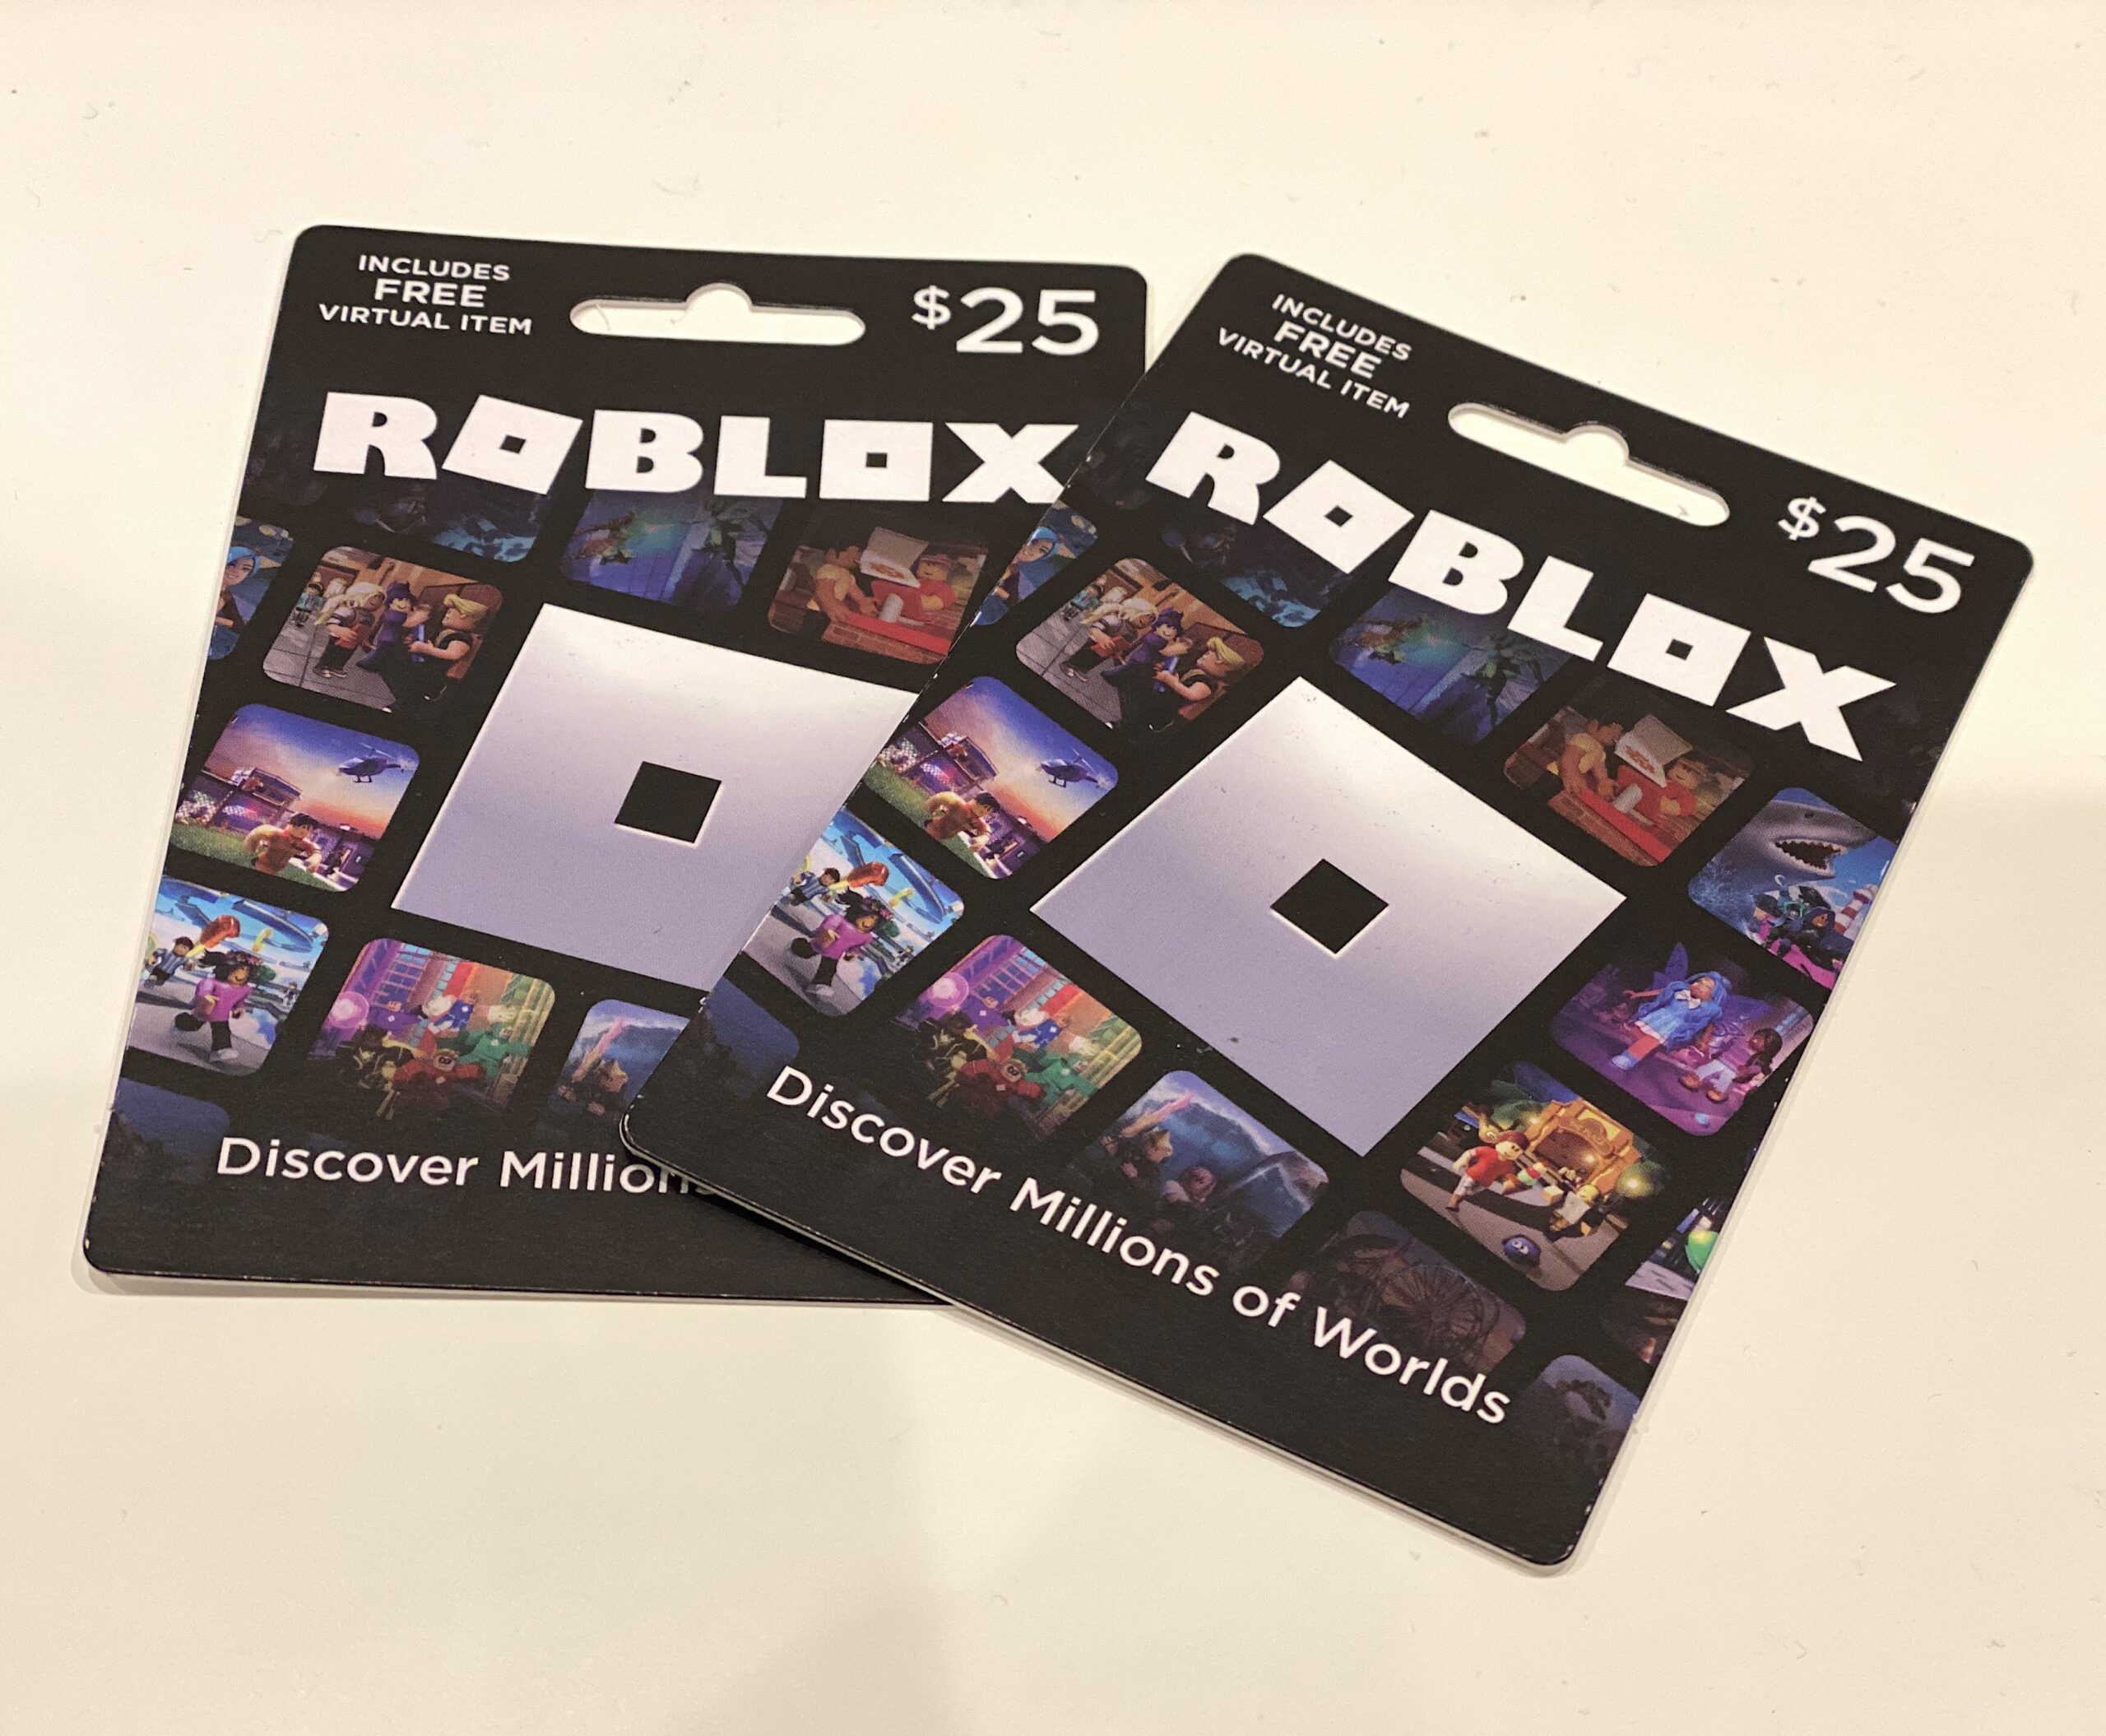 Cartão Digital Roblox 200 Robux  Personalize, Jogue, Divirta-se - Xbr